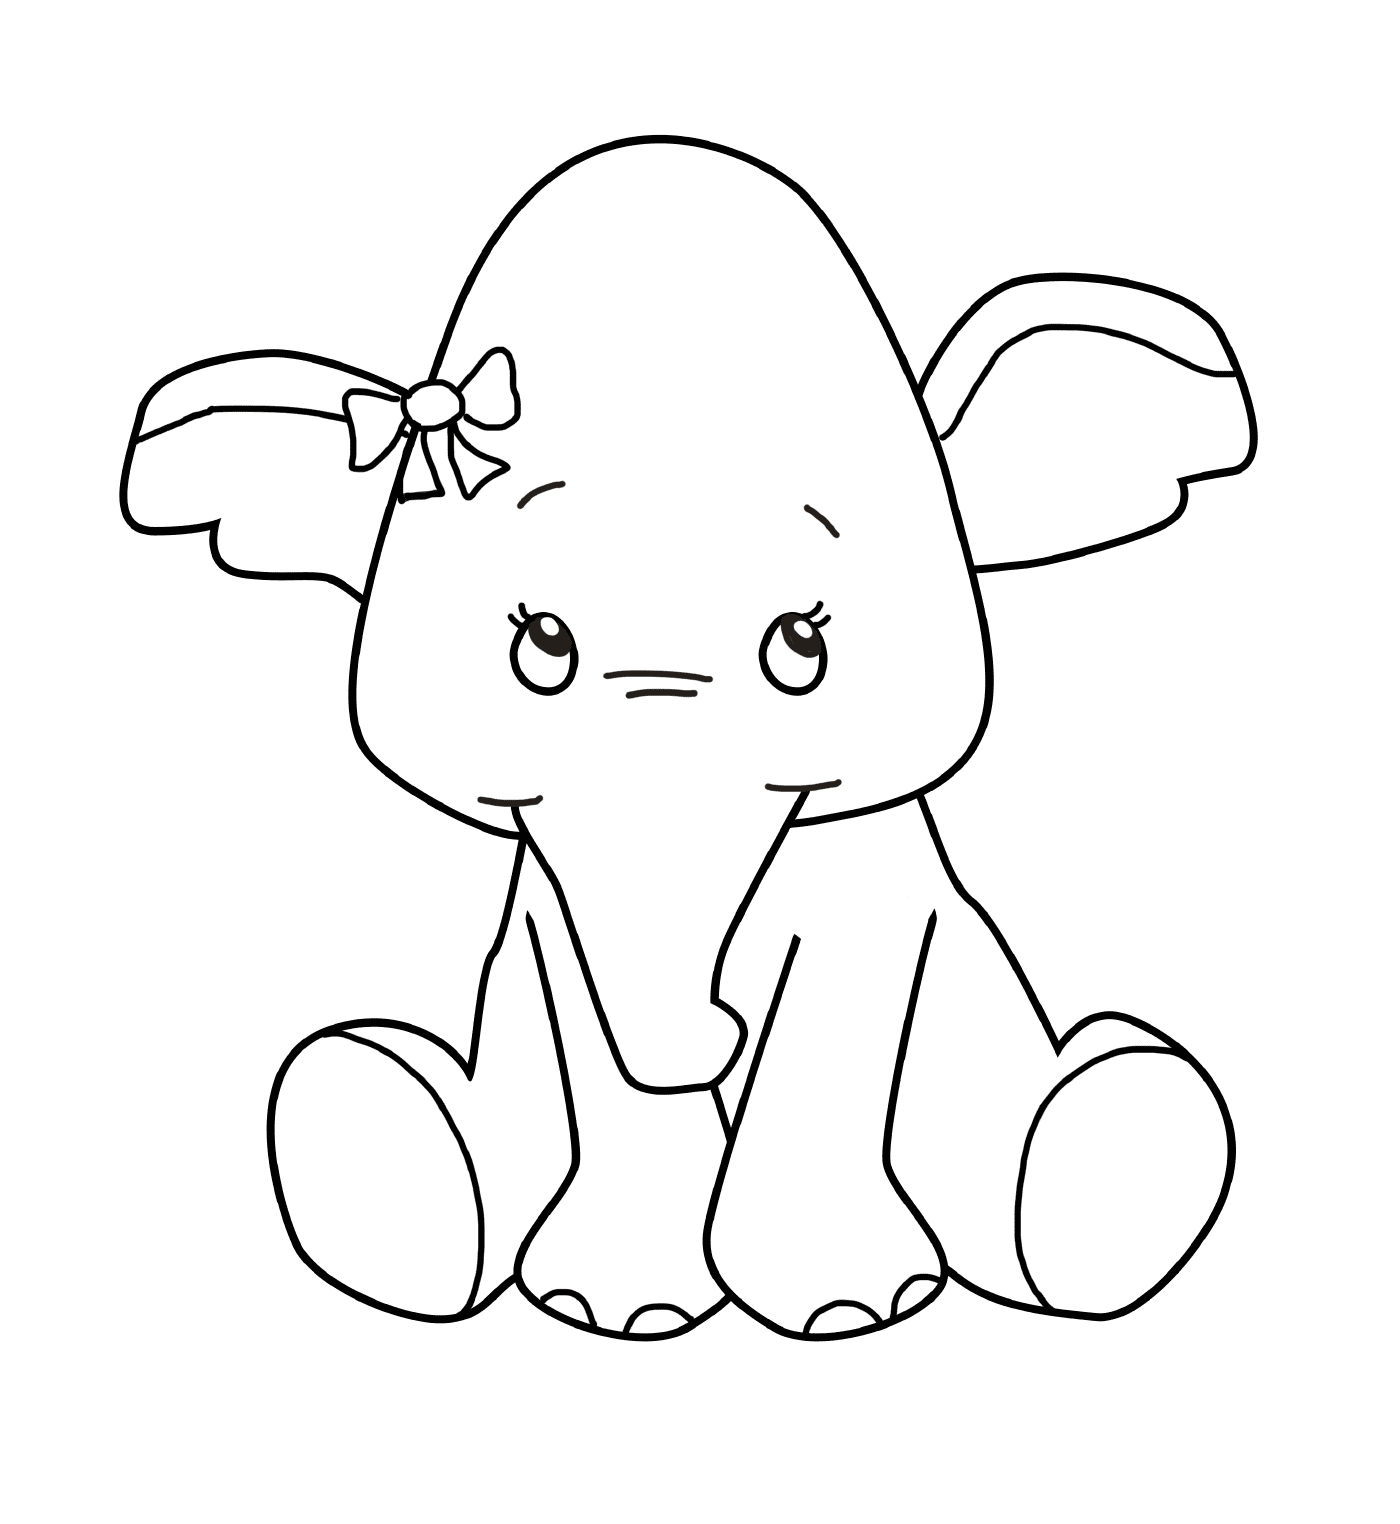   Un bébé éléphant avec un nœud sur la tête 